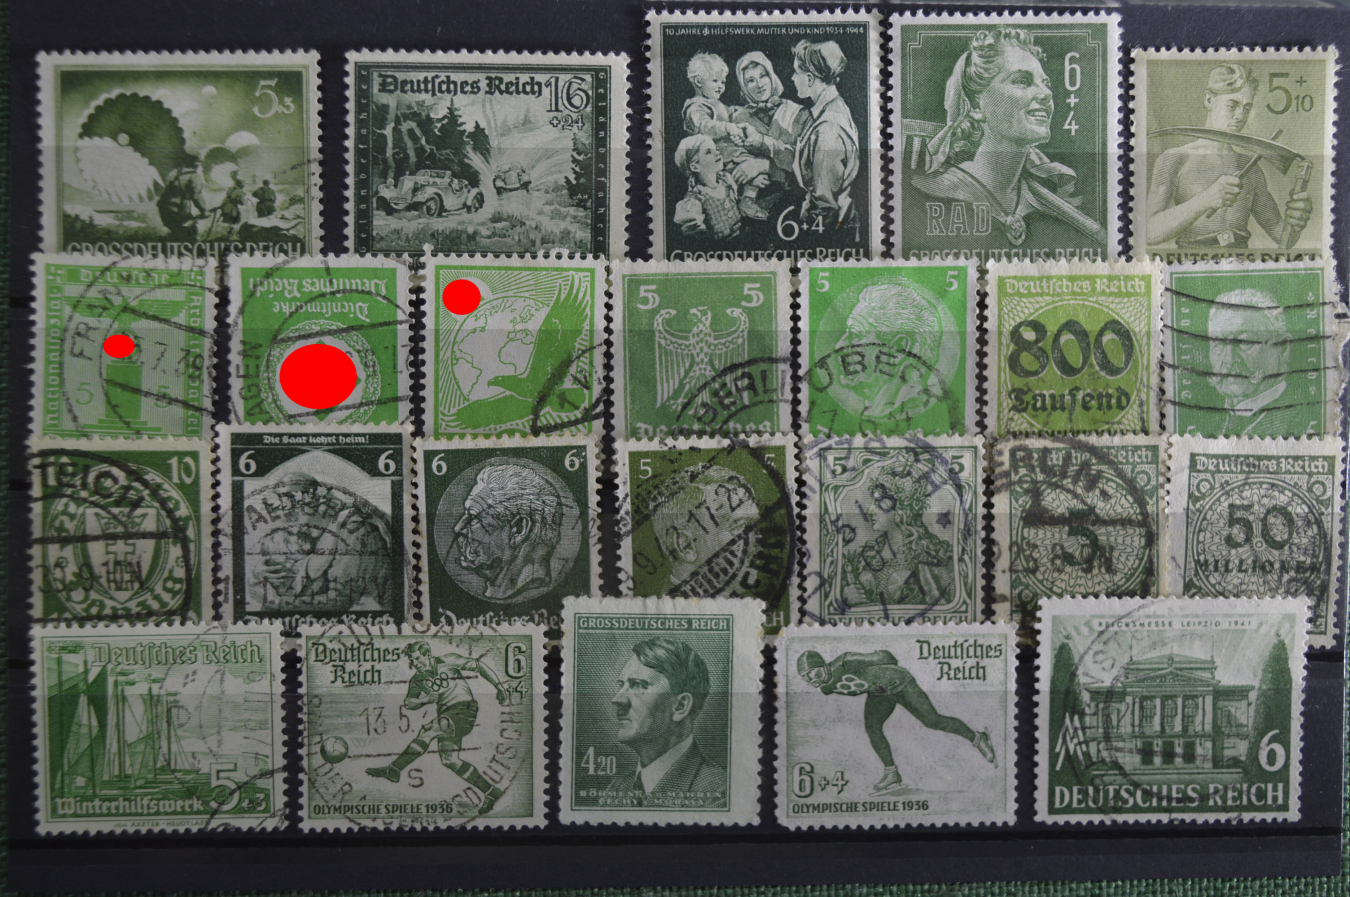 Купить марки германии. Почтовые немецкие марки с изображением Гитлера 1939 года. Кляссер для немецких почтовых марок. Почтовые марки рейха с сельским хозяйством. Марки Почтовая немецкая 1937.